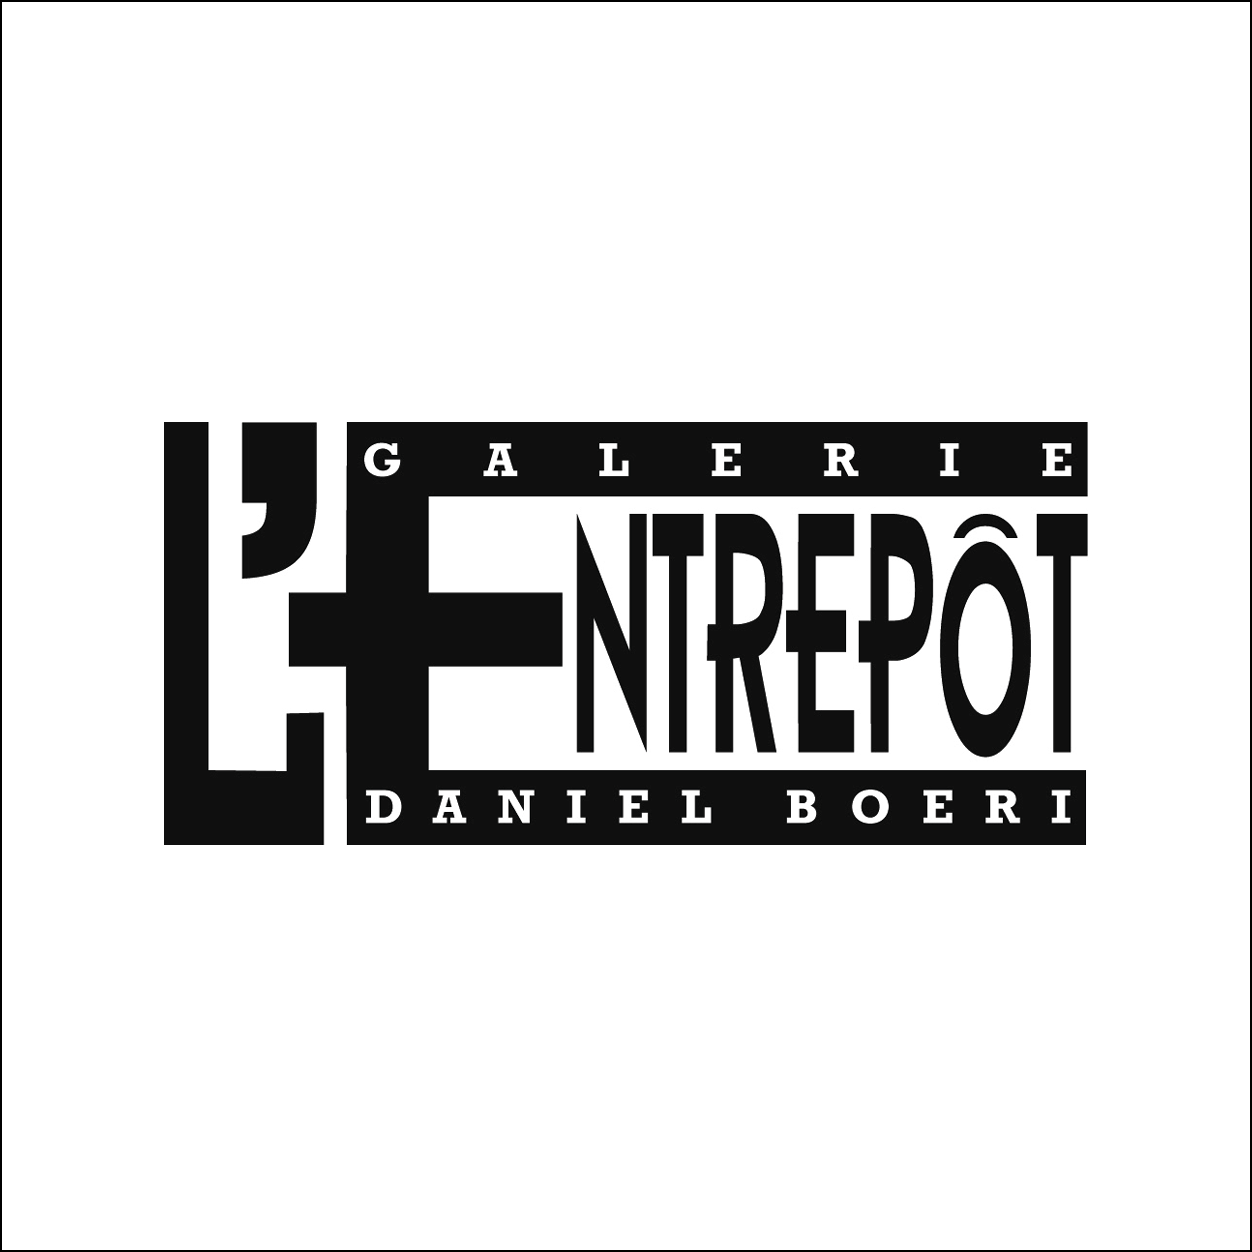 L’Entrepot – Daniel Boeri